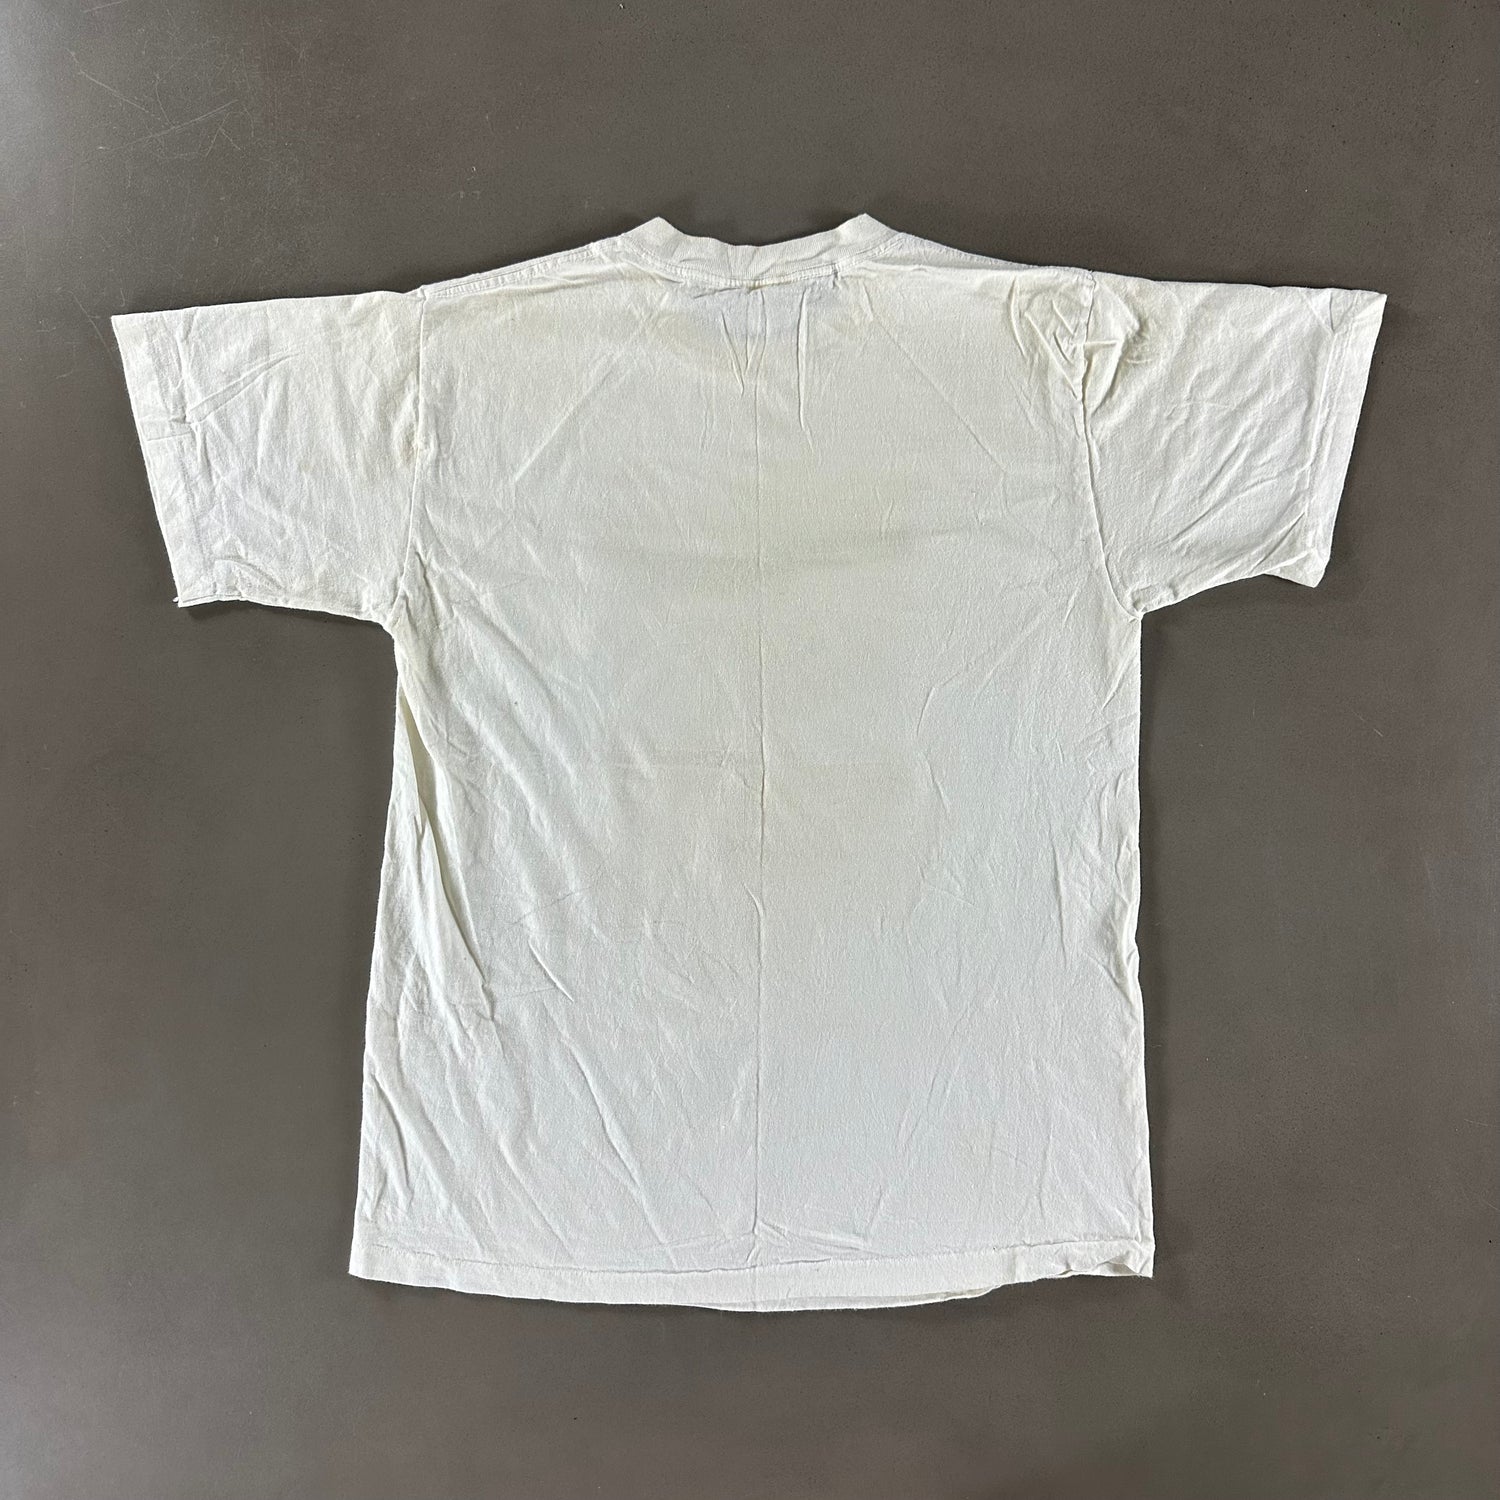 Vintage 1991 Cat T-shirt size Large